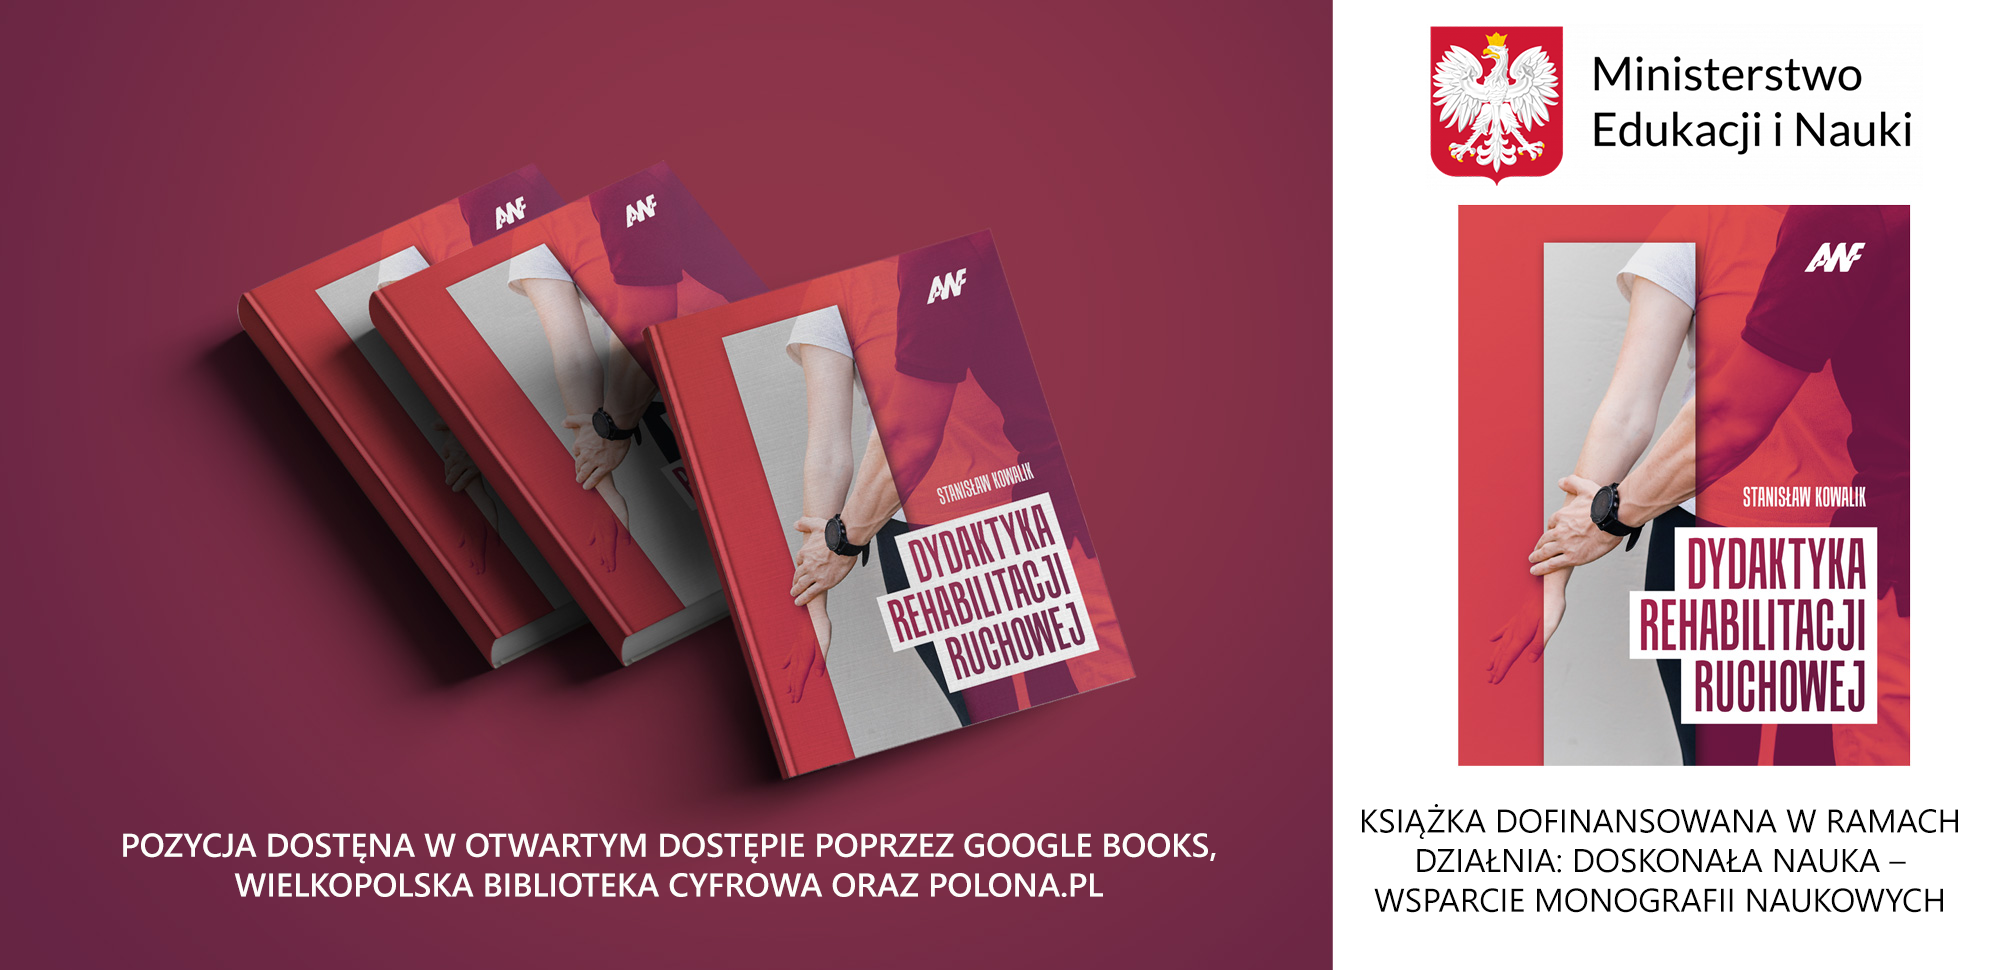 Książka Dydaktyka rehabilitacji, Stanisława Kowalika, dostępna w otwartym dostępie. 